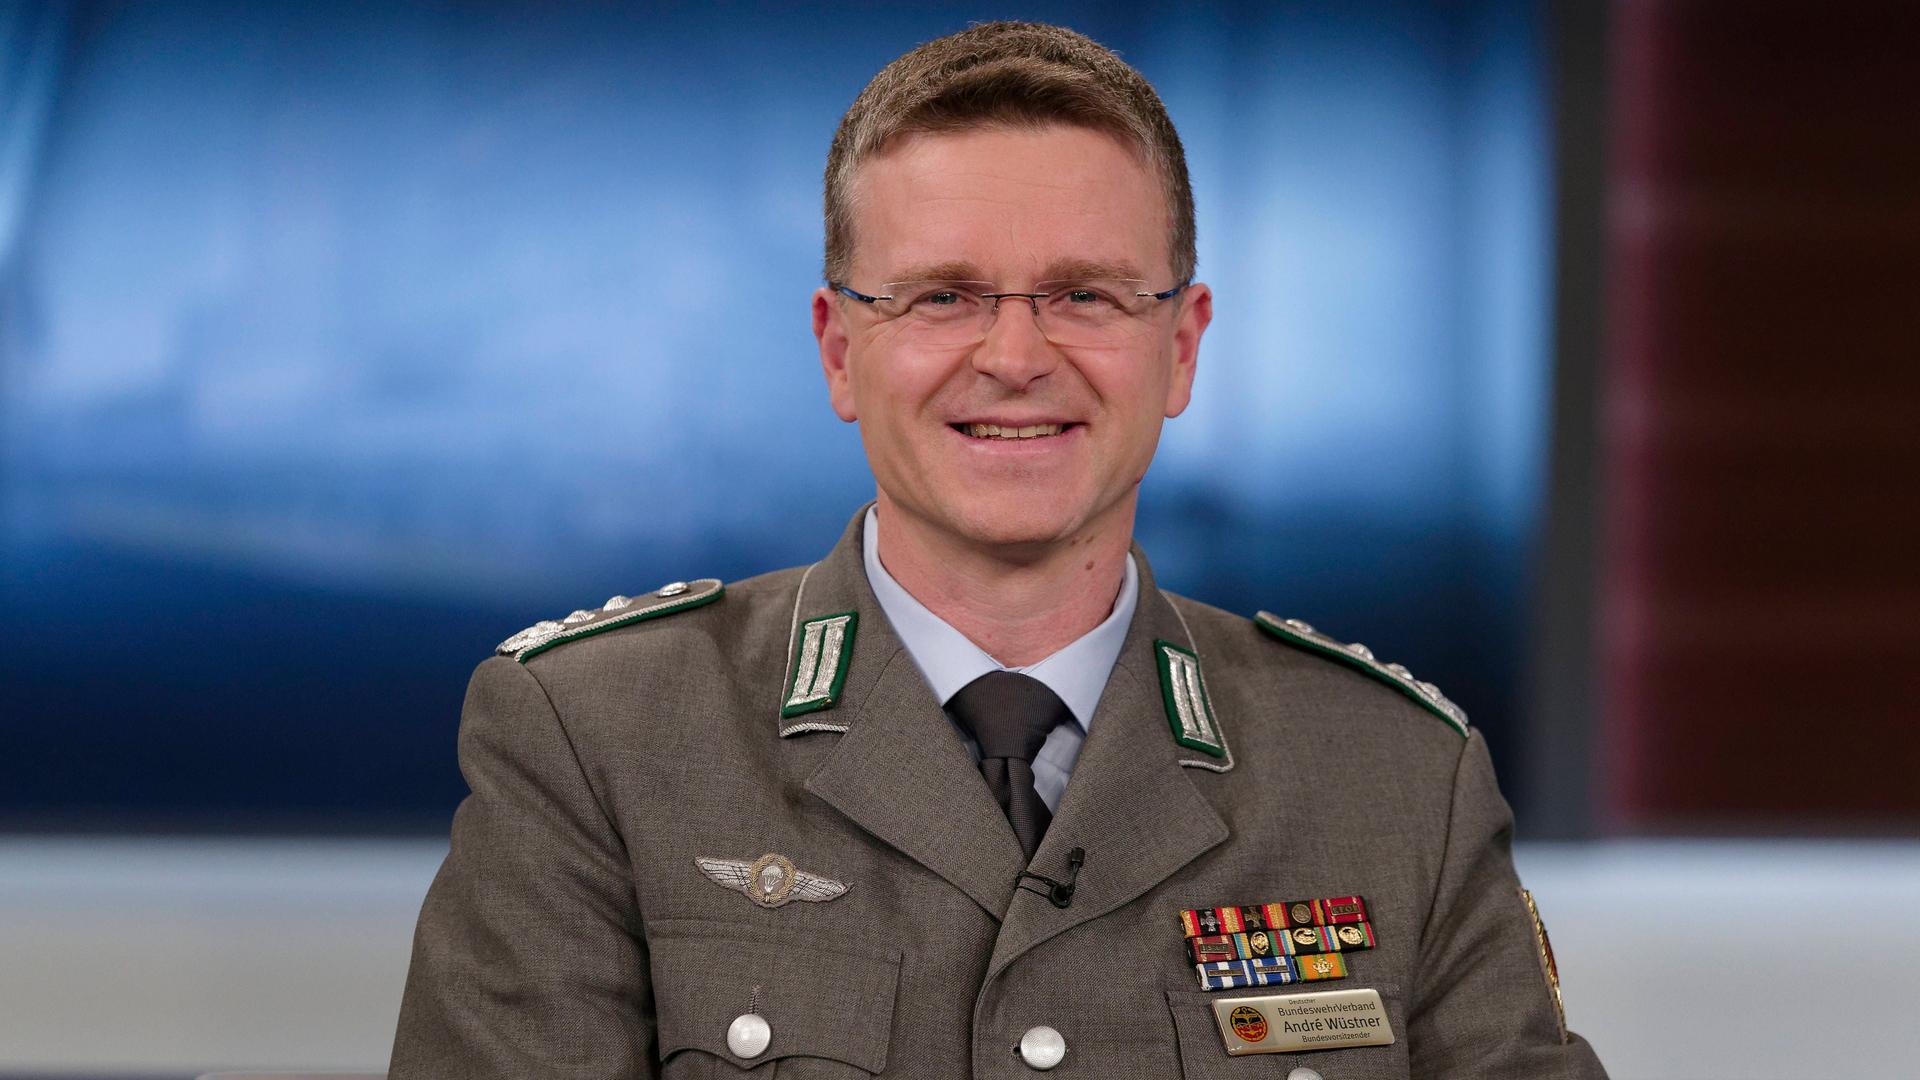 Andre Wüstner, Vorsitzender des Bundeswehrverbandes und Oberst, lächelt in die Kamera. Er trägt eine Uniform.